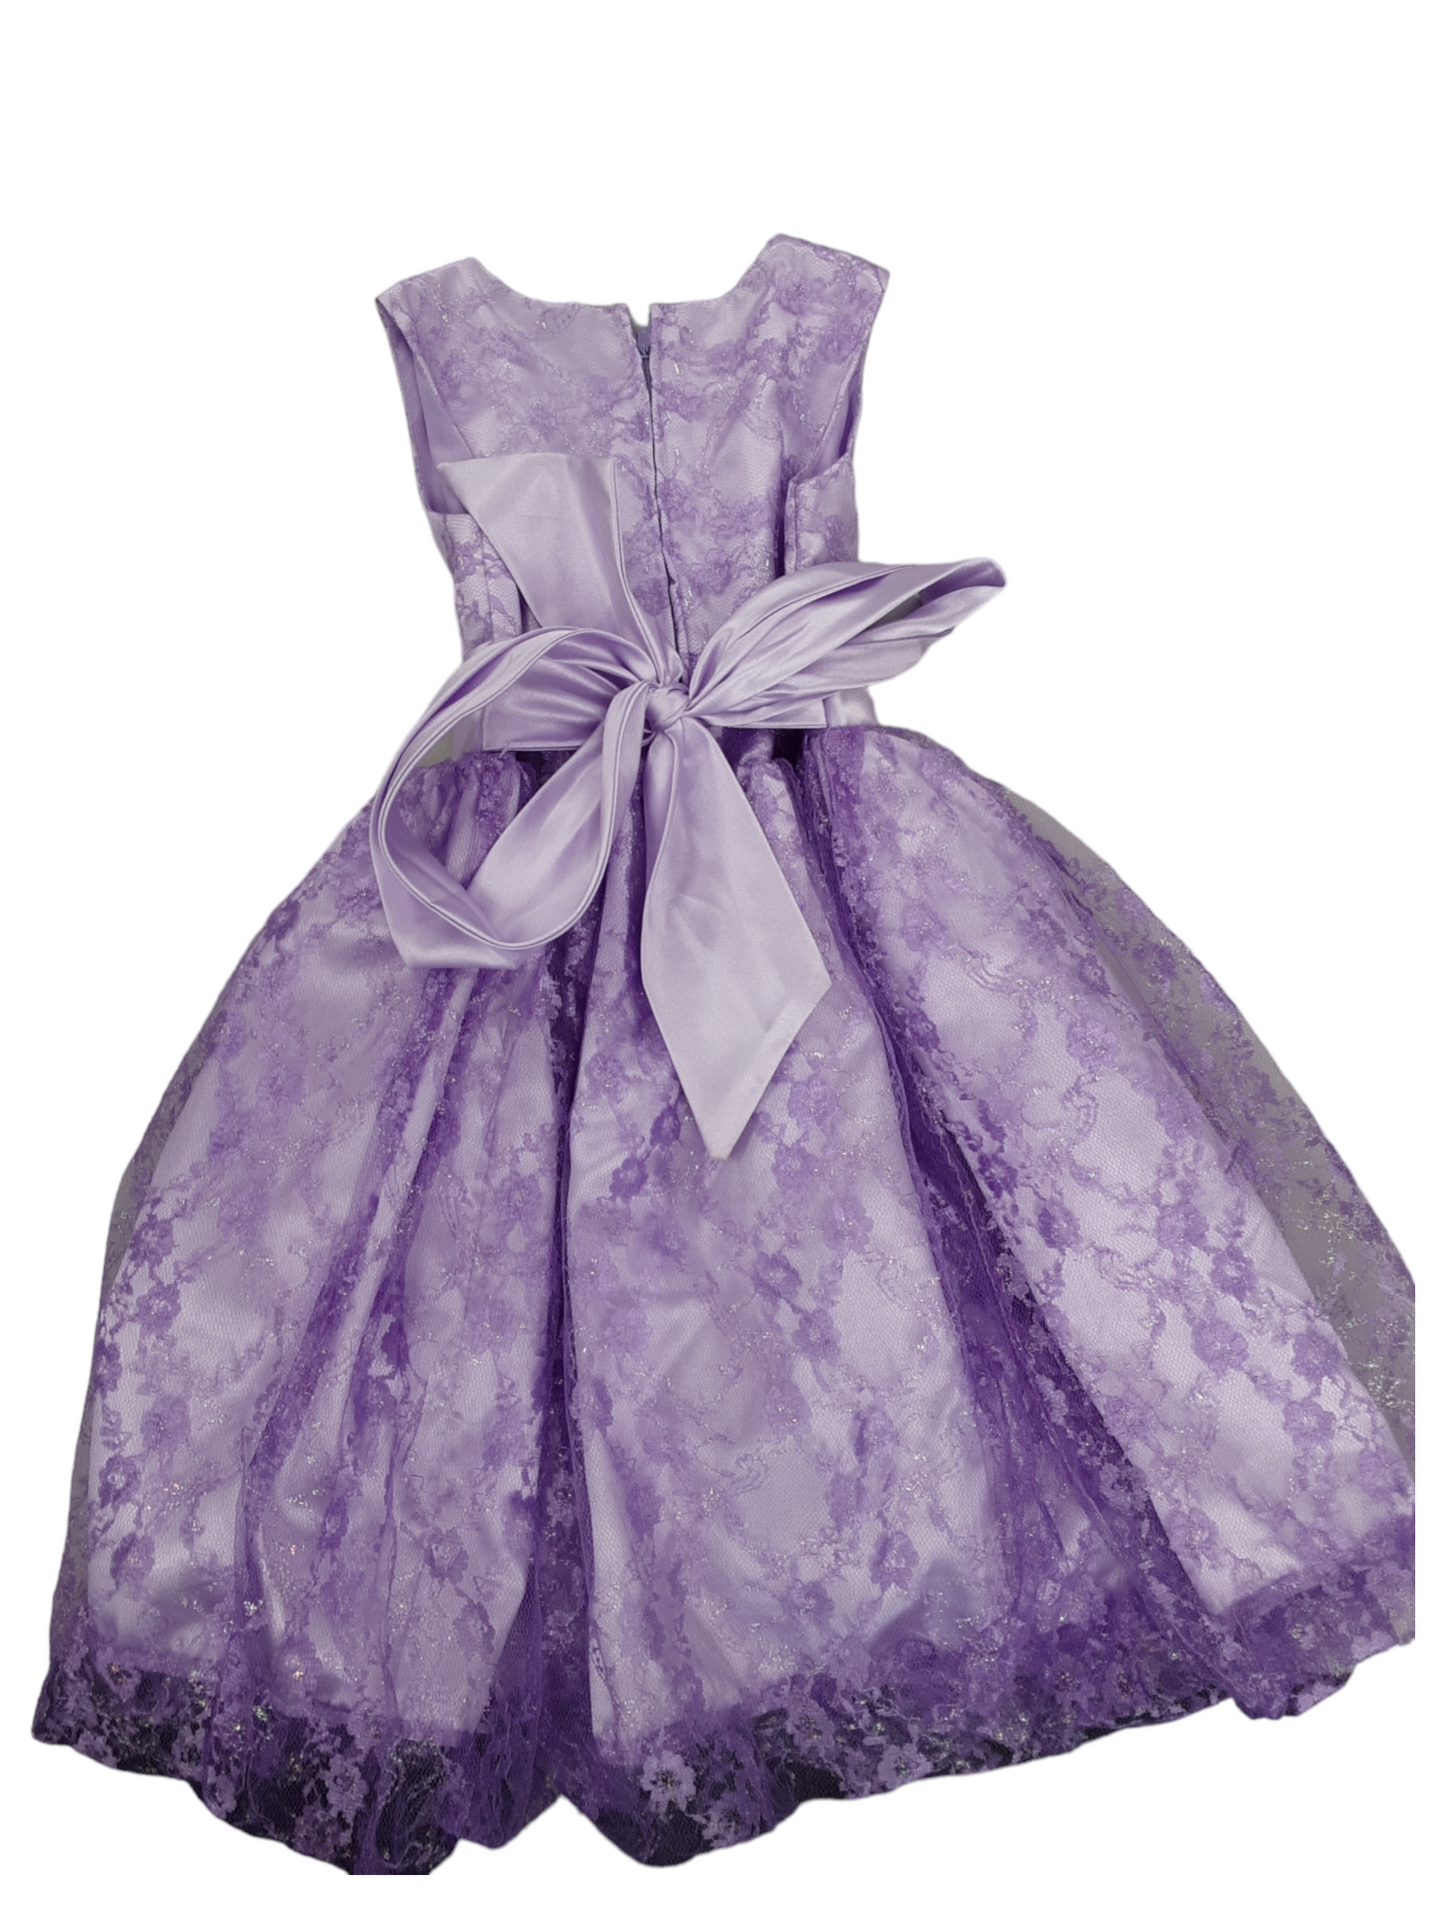 2T lavendar ballgown